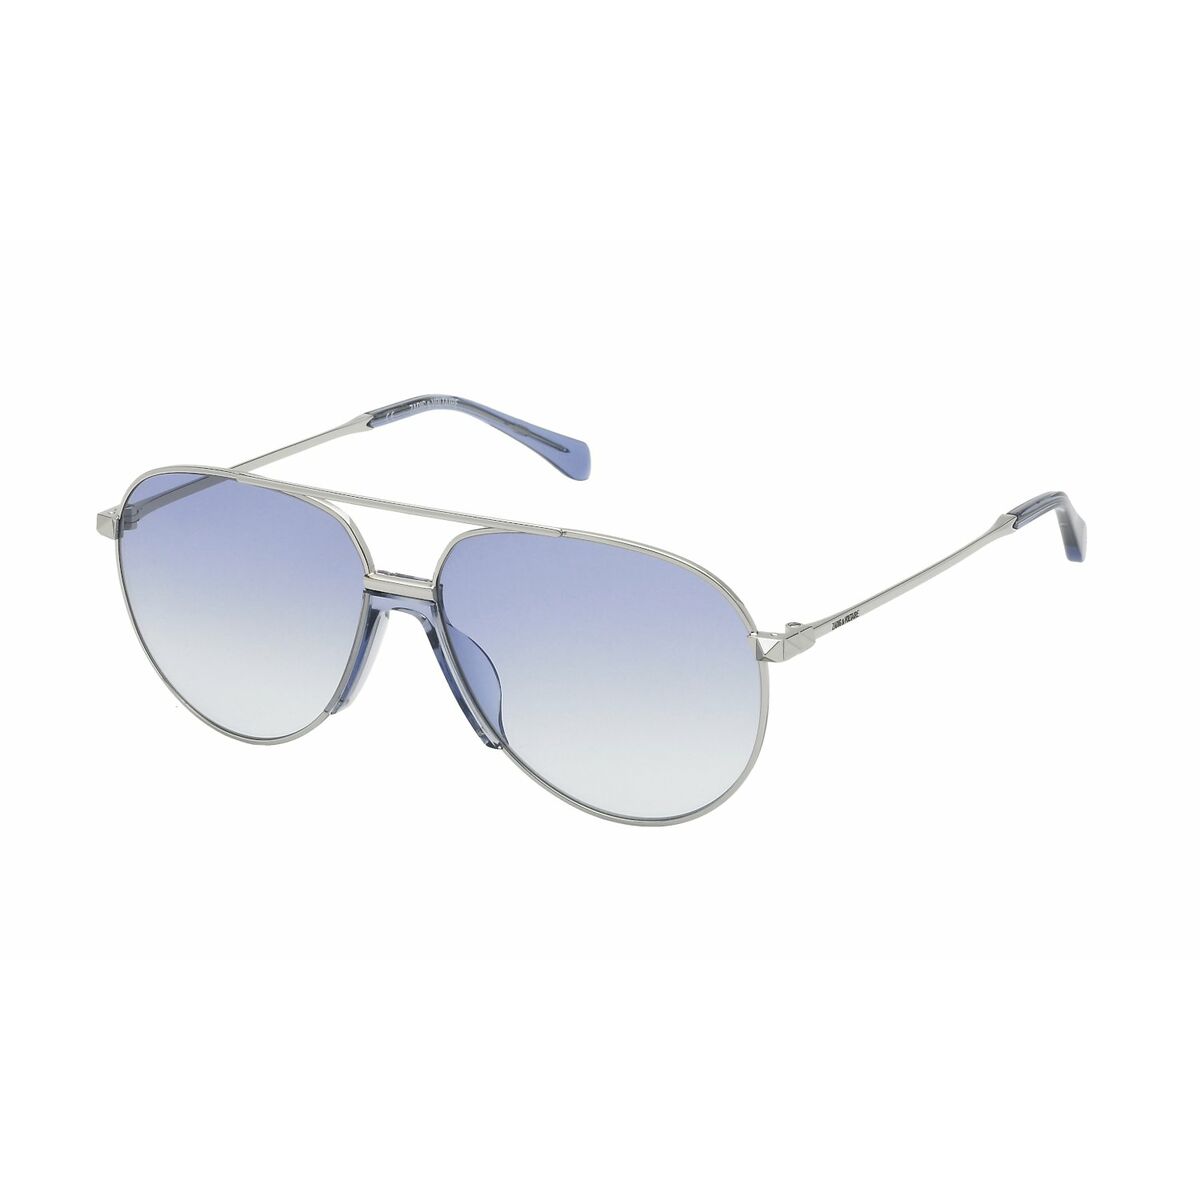 Zadig & Voltaire Unisex Sunglasses  Szv320-59579y  59 Mm Gbby2 In Metallic